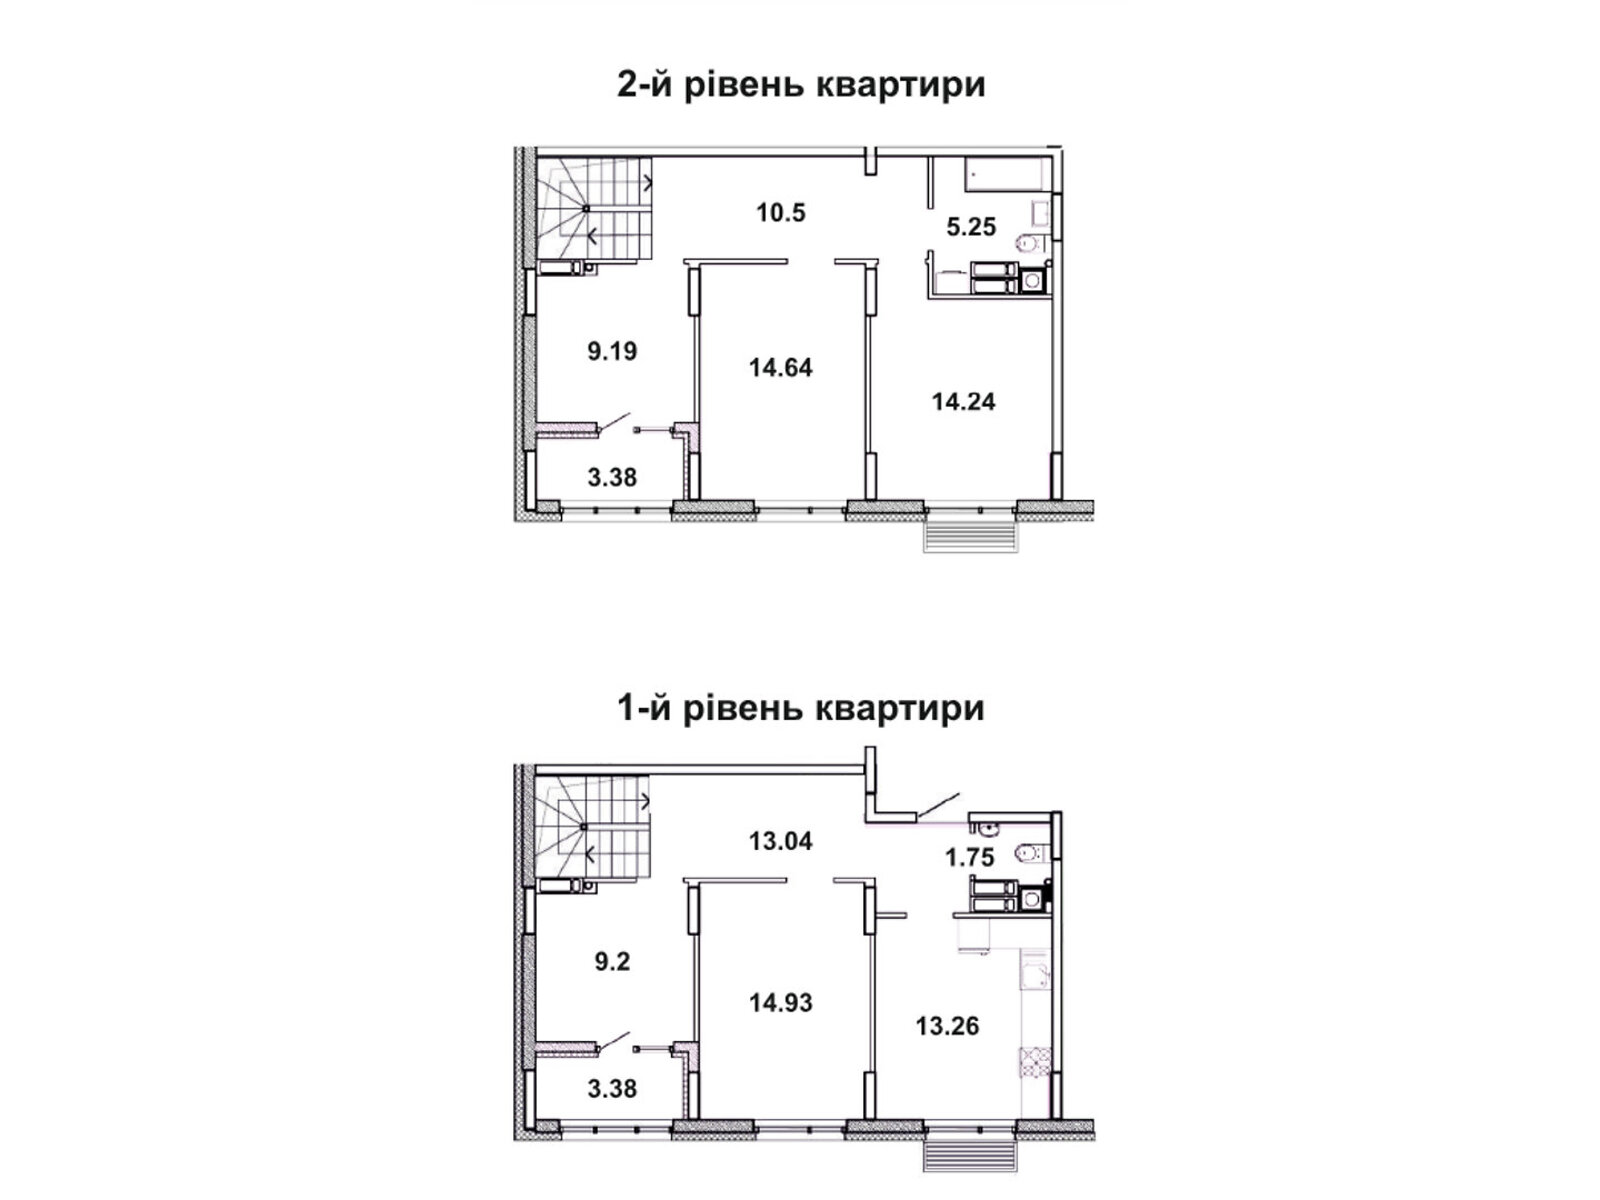 Продажа пятикомнатной квартиры в Борисполе, на ул. Франка 21, фото 1